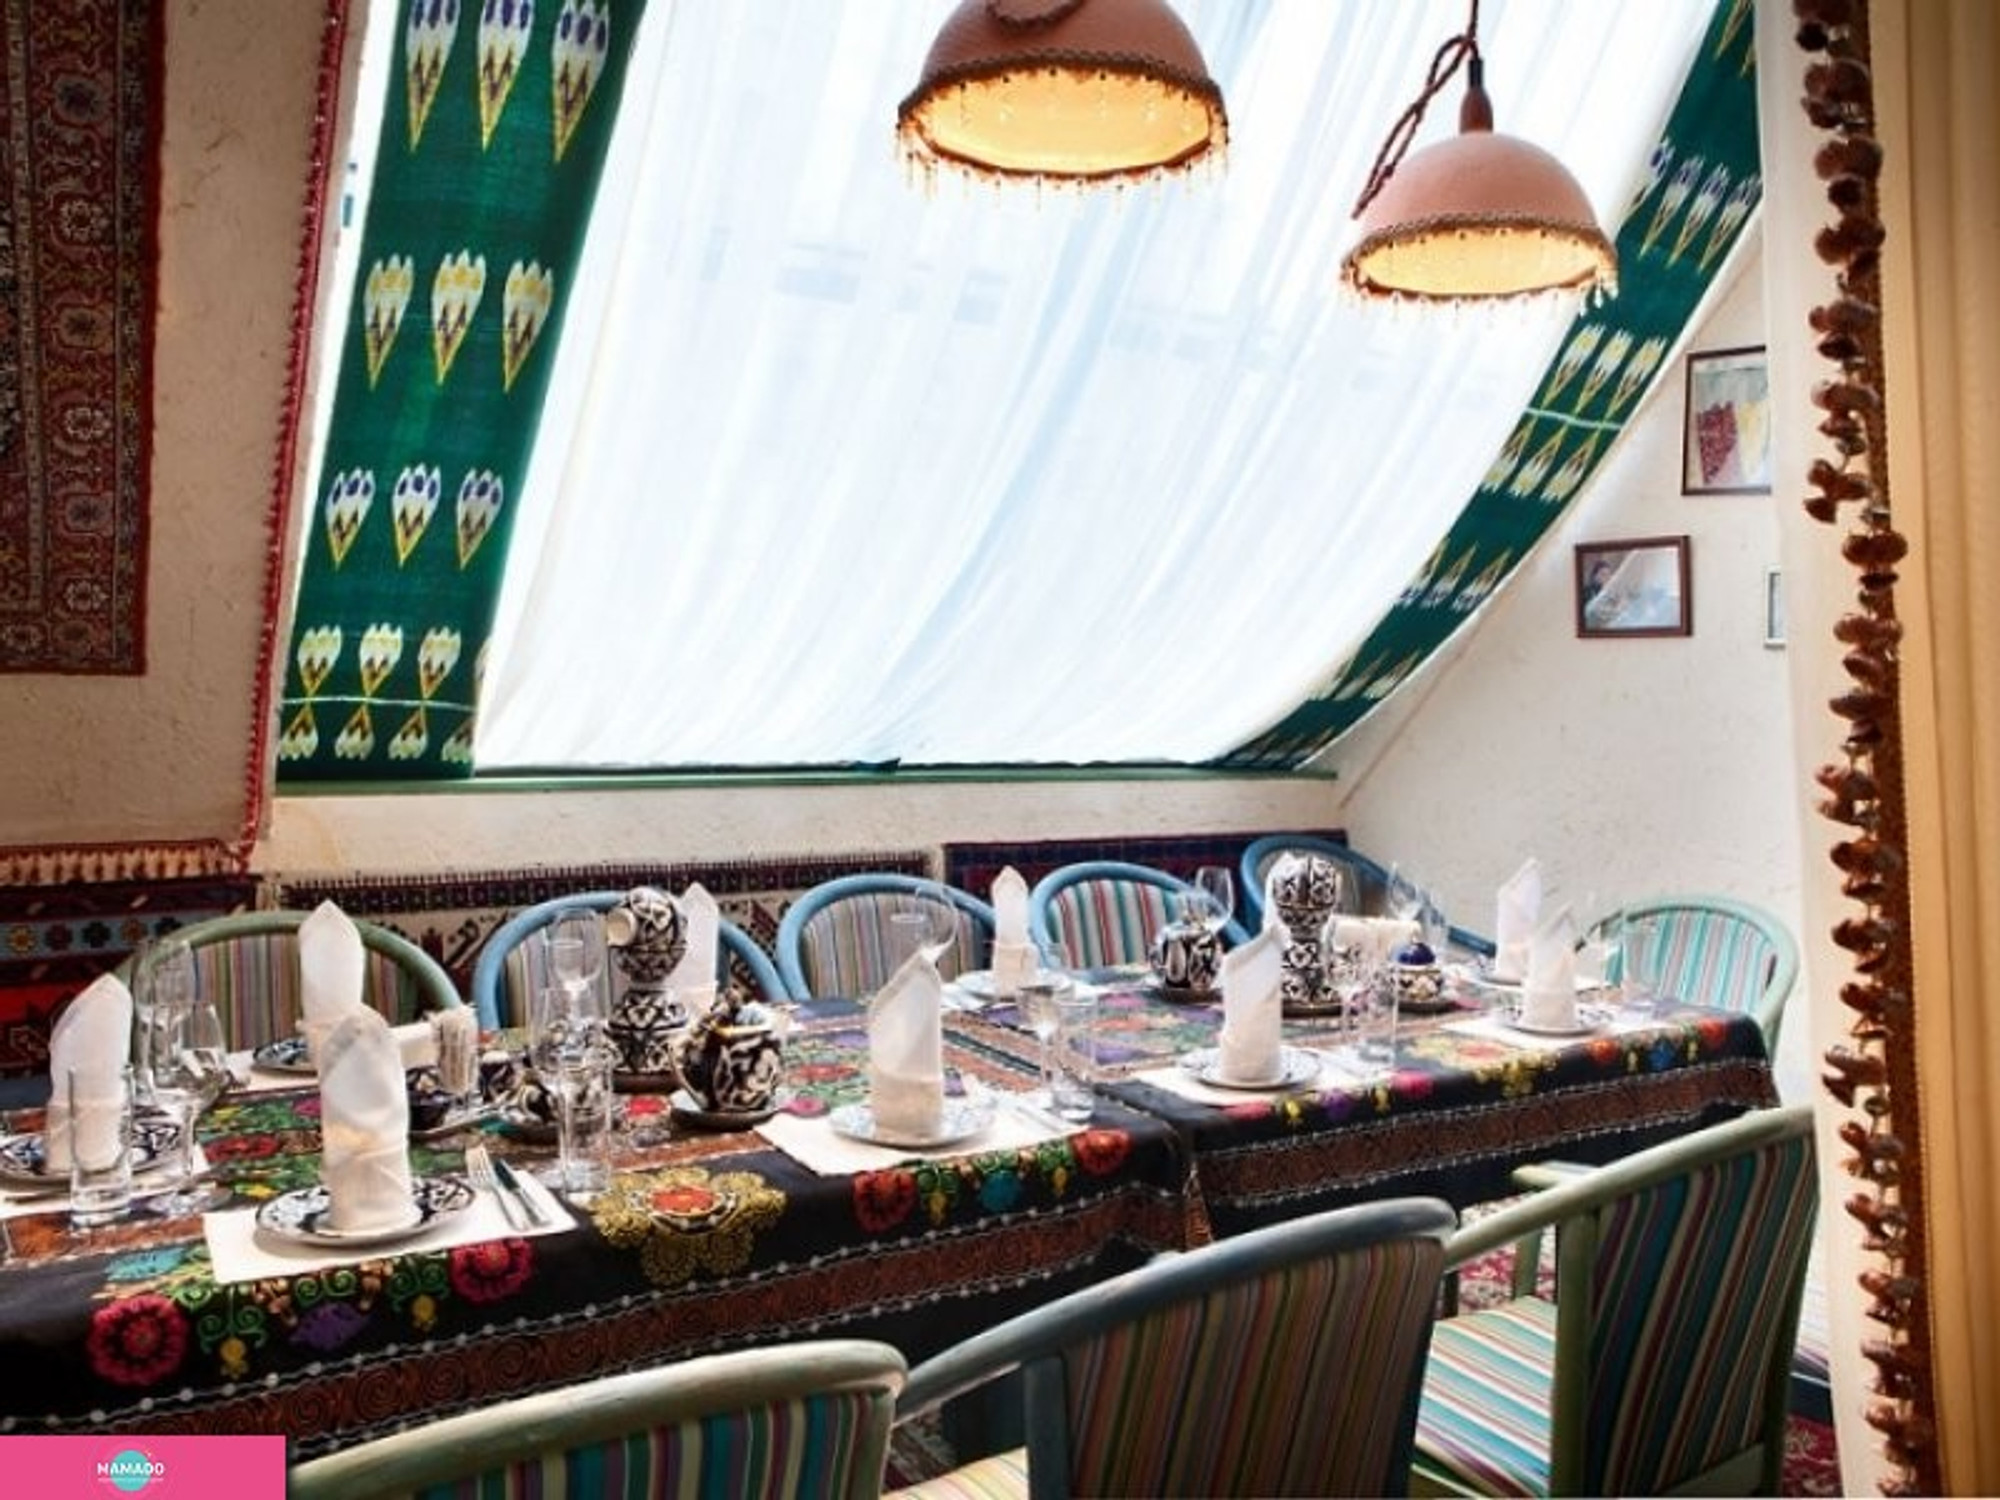 "Урюк", узбекская чайхана, ресторан на Павелецкой, Москва 